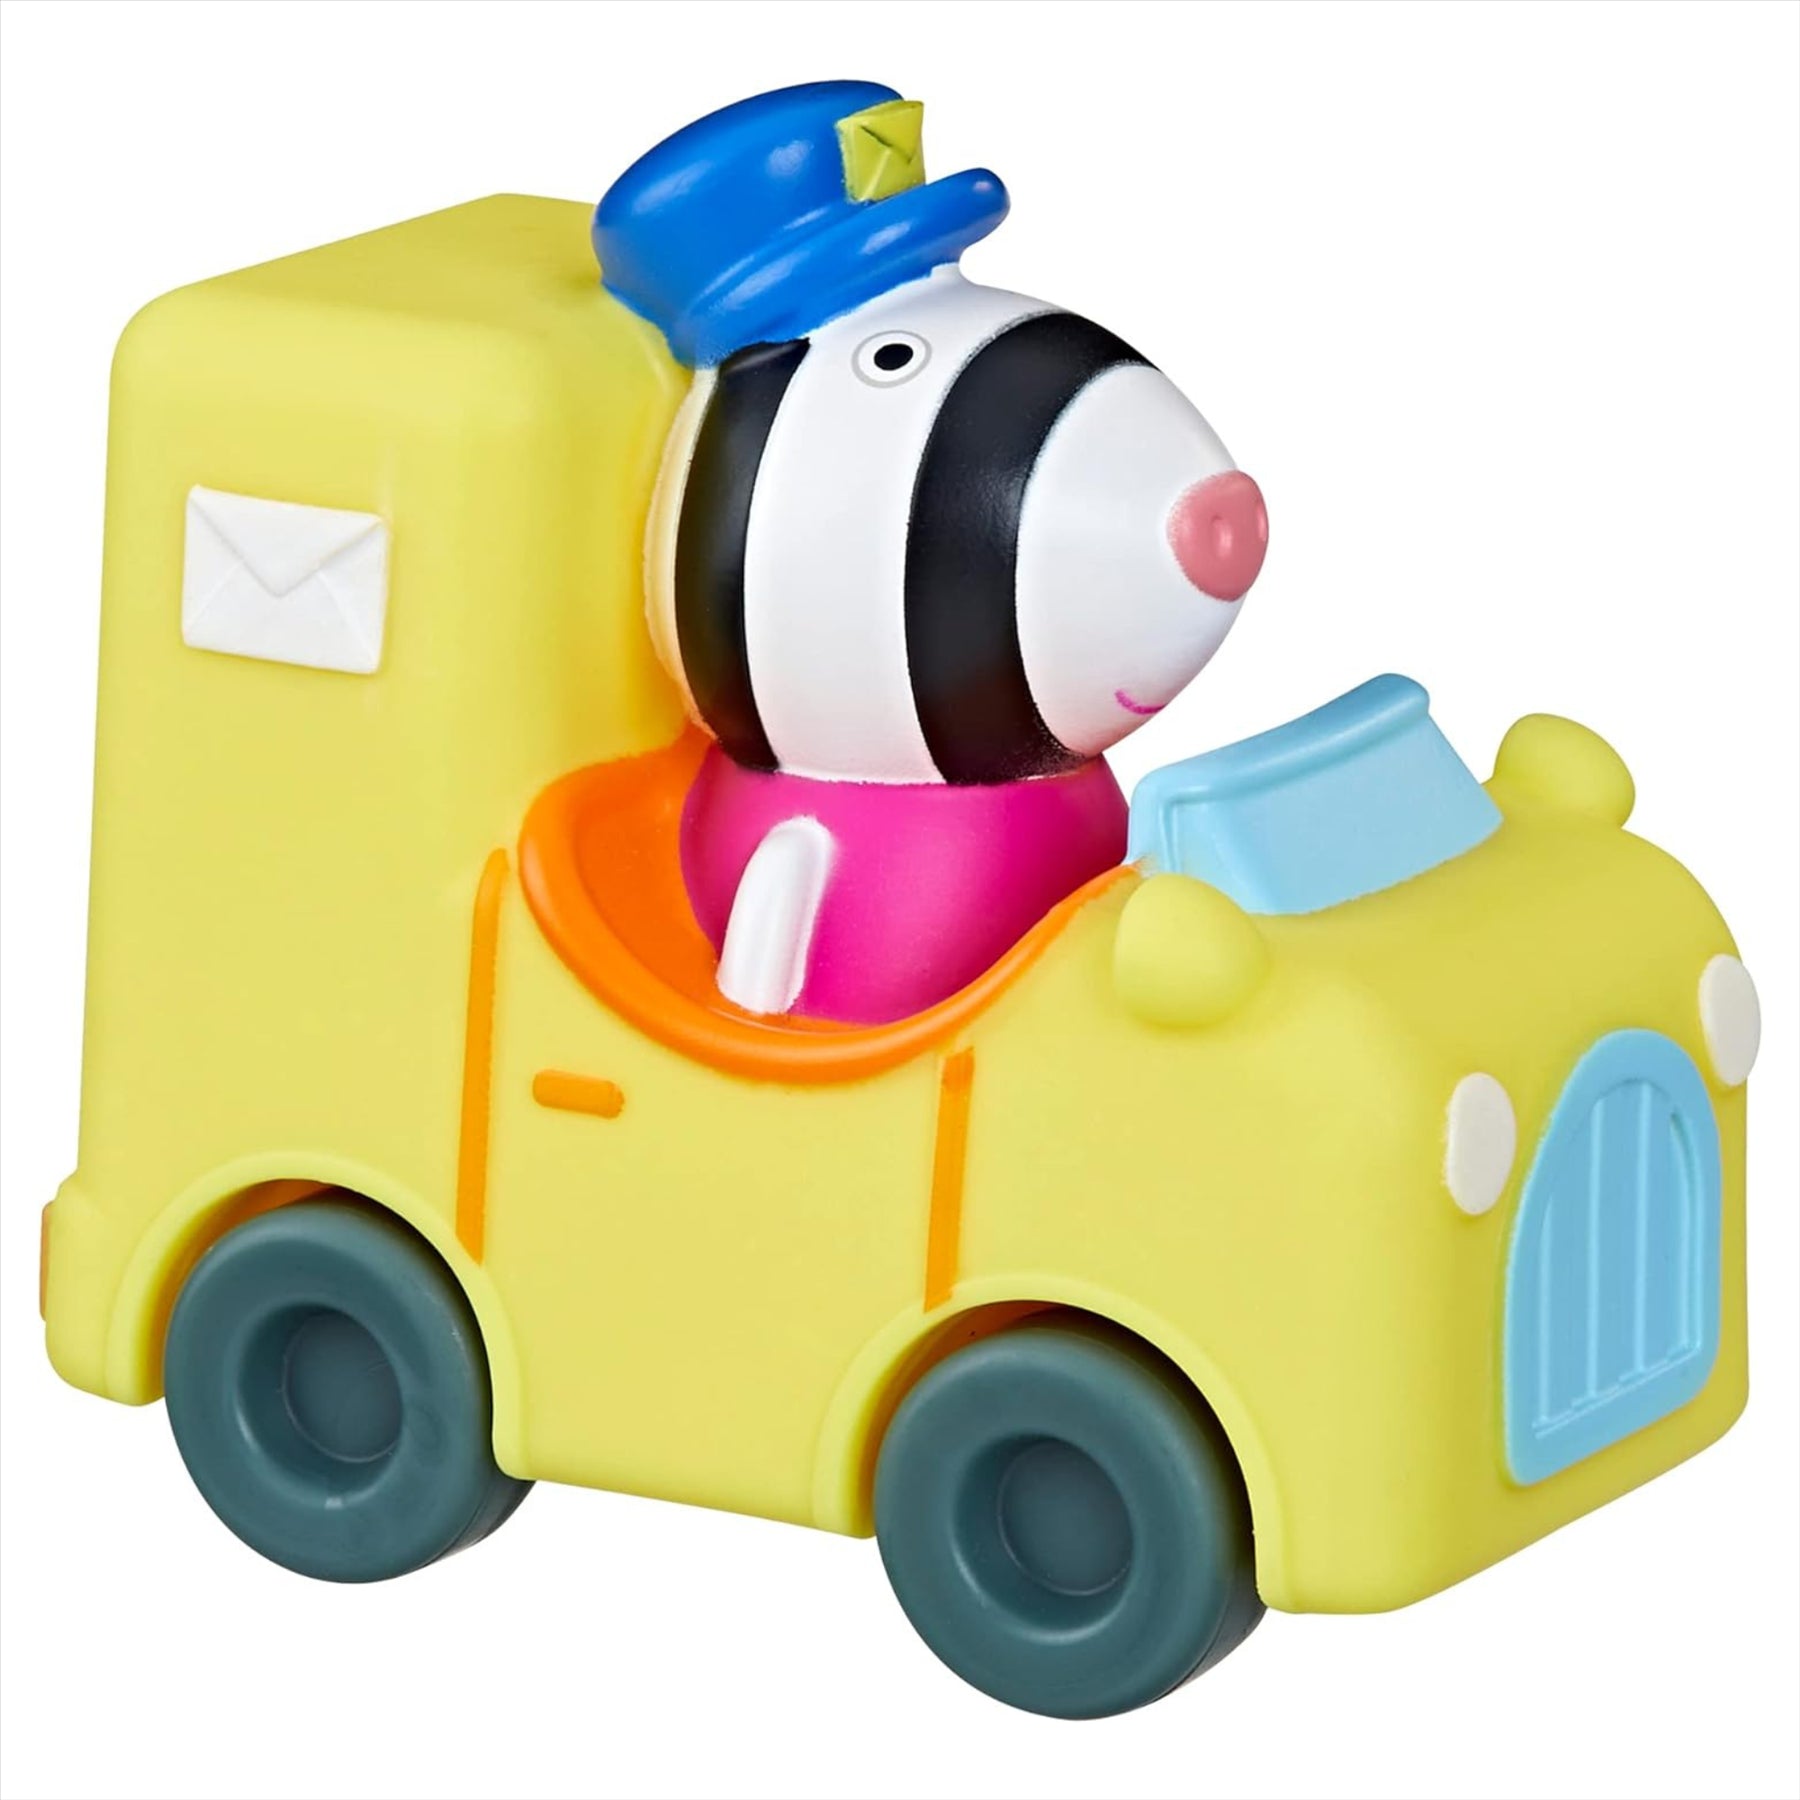 Peppa Pig Little Buggies - Zoe Zebra Figure In Post Van Toy Vehicle - Toptoys2u